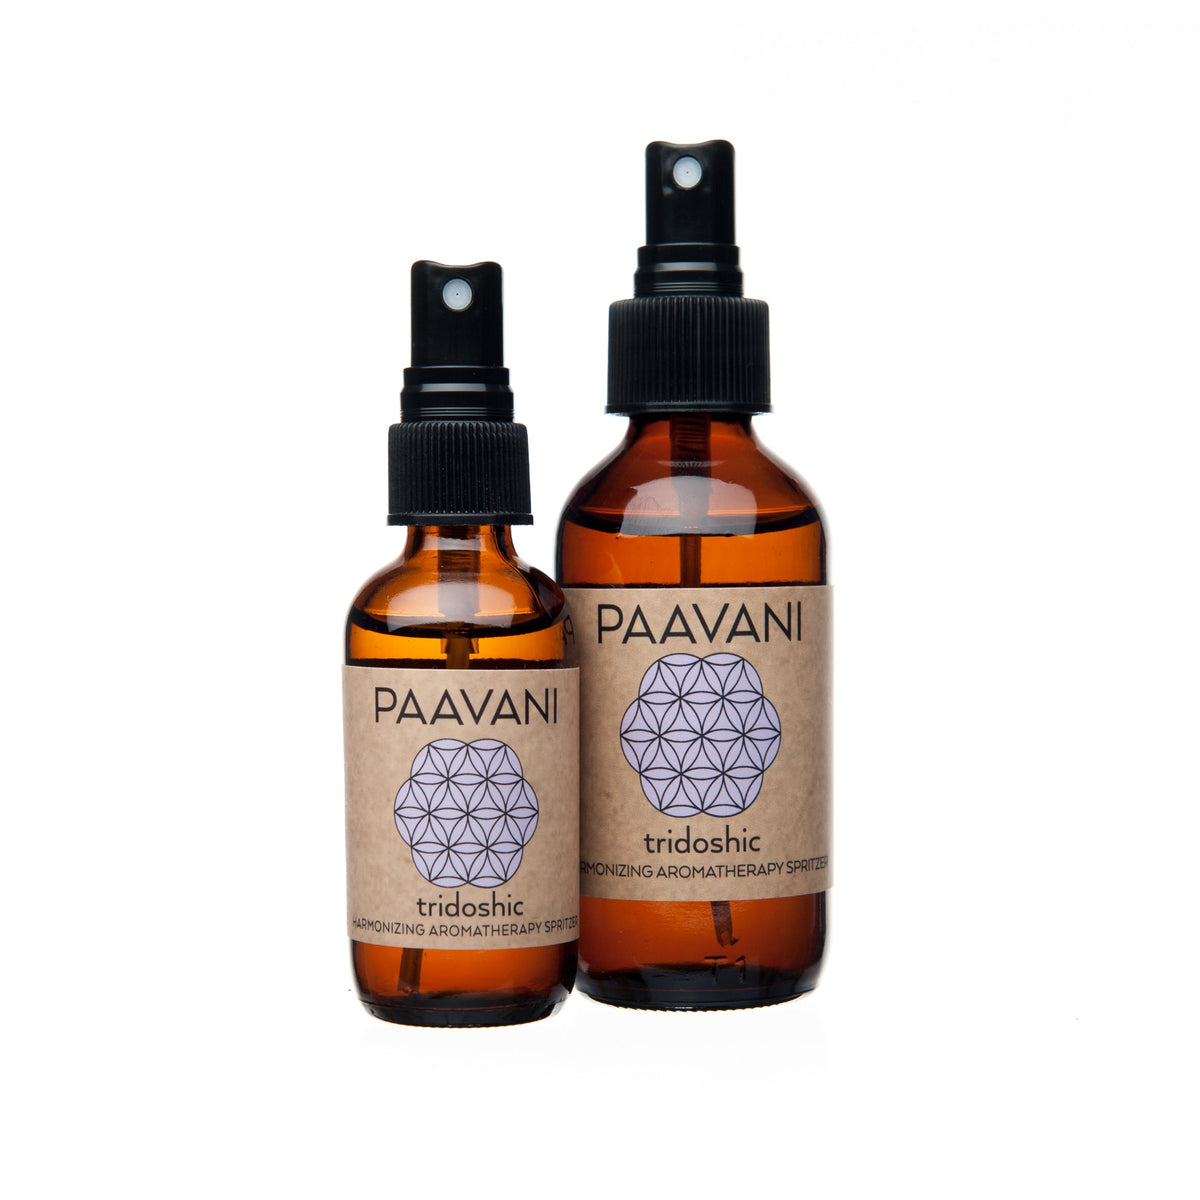 * Paavani Ayurveda - Tridoshic Spritzer with Organic Cedar Atlas, Geranium and Wild Orange, Ayurvedic Aromatherapy -1